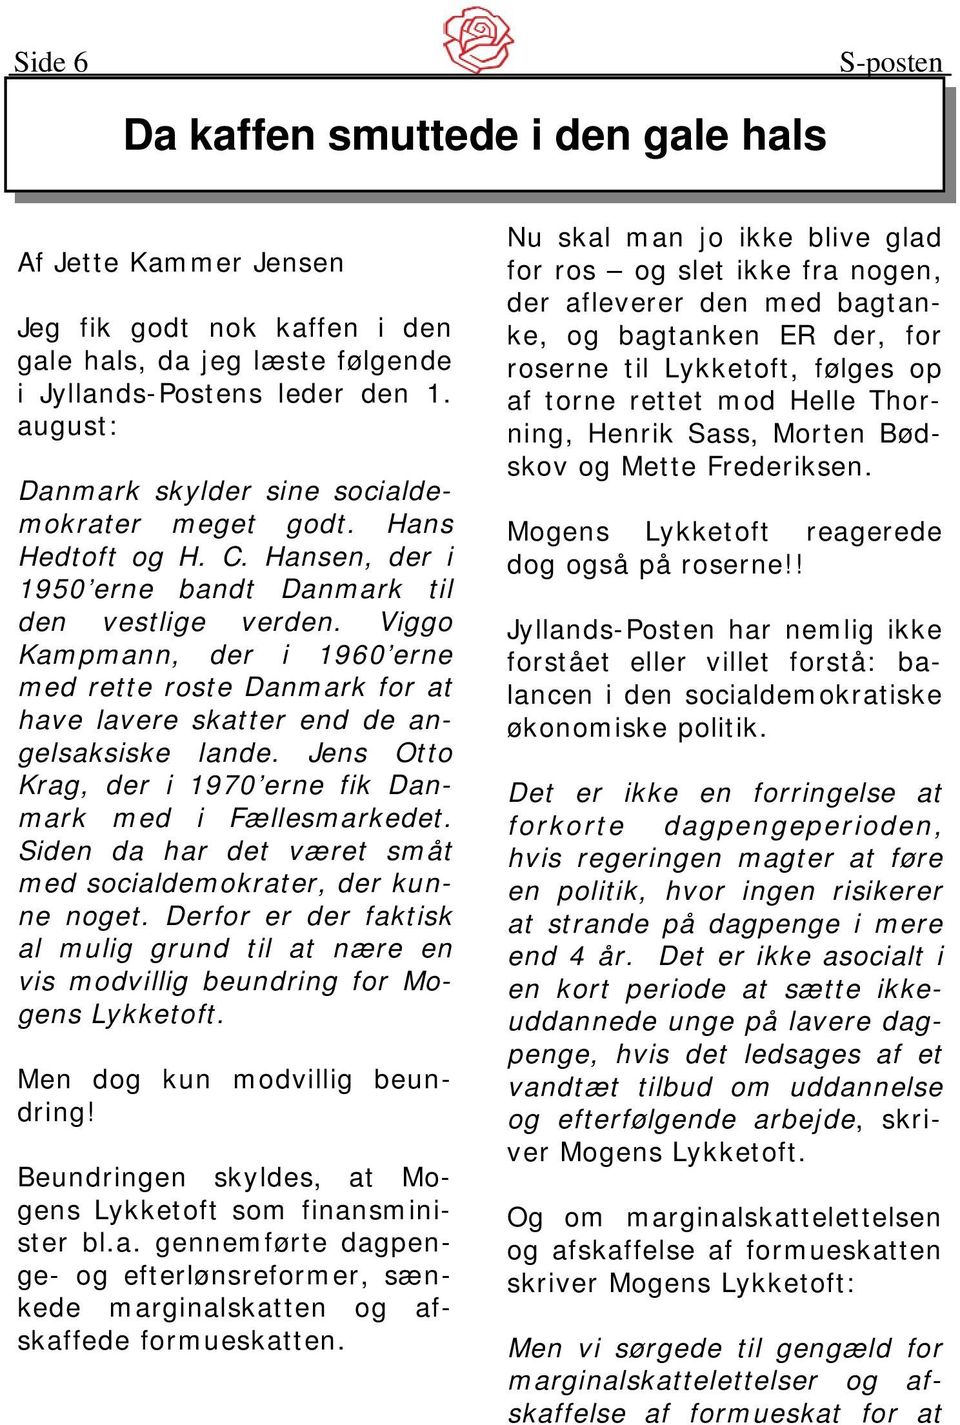 Viggo Kampmann, der i 1960 erne med rette roste Danmark for at have lavere skatter end de angelsaksiske lande. Jens Otto Krag, der i 1970 erne fik Danmark med i Fællesmarkedet.